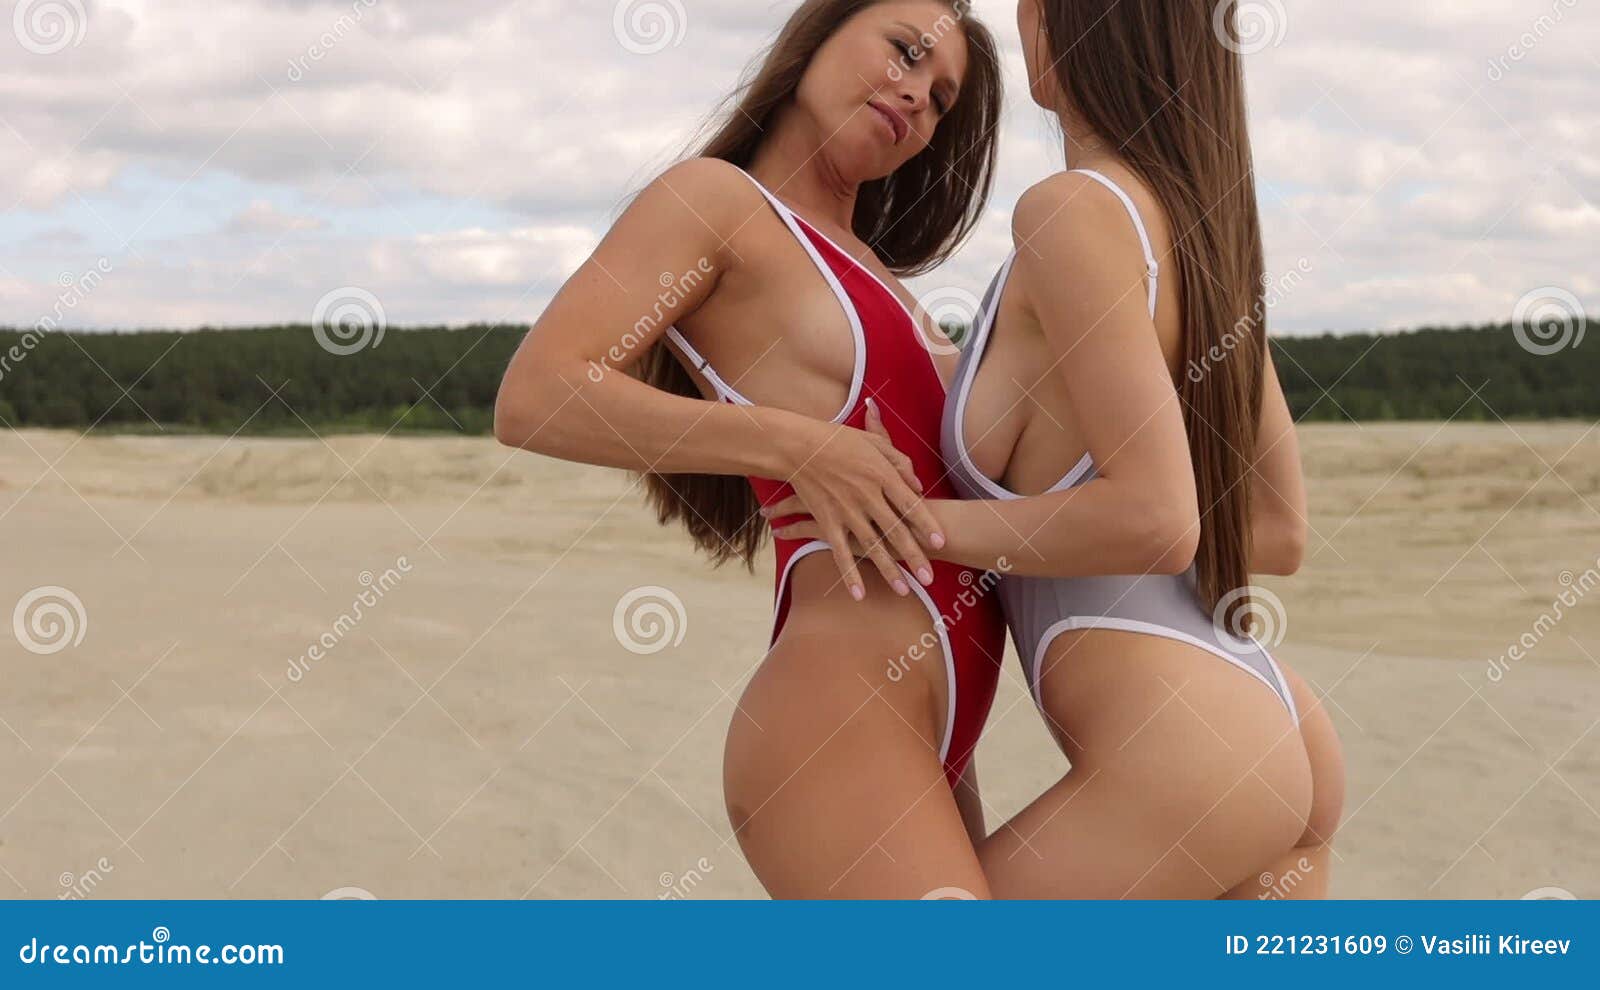 asia delacruz add hot girls touching eachother photo